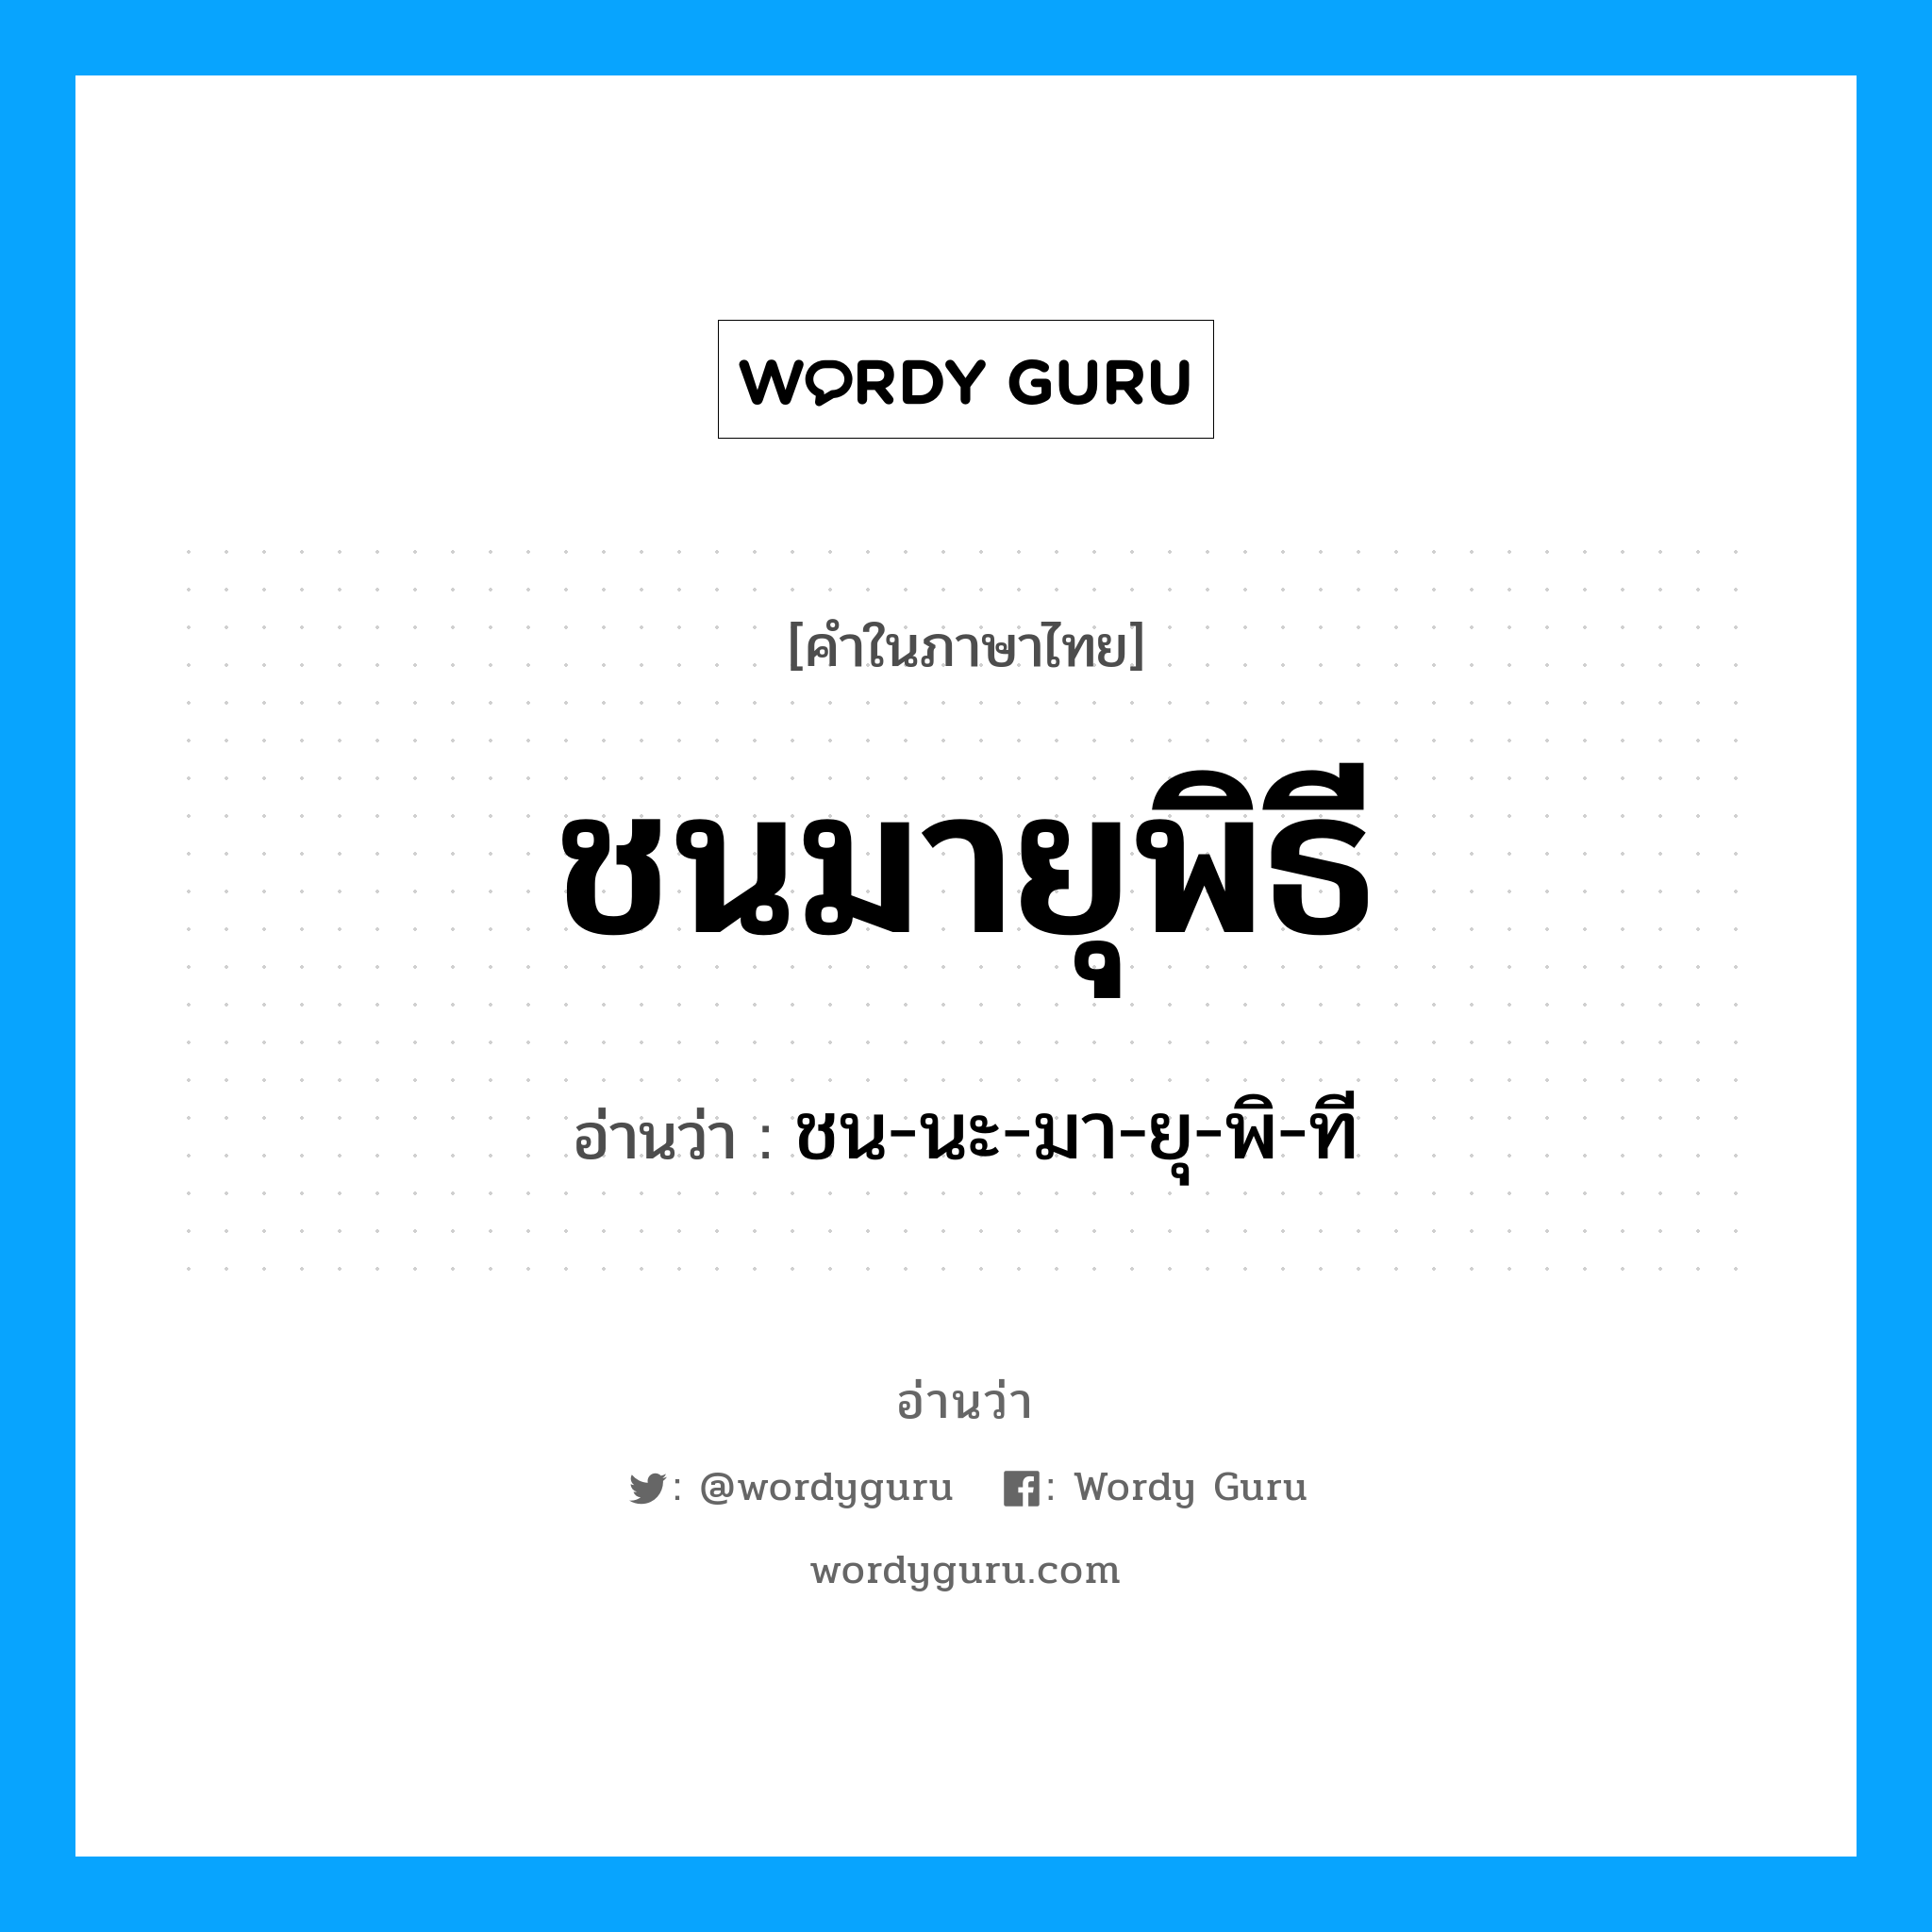 ชน-นะ-มา-ยุ-พิ-ที เป็นคำอ่านของคำไหน?, คำในภาษาไทย ชน-นะ-มา-ยุ-พิ-ที อ่านว่า ชนมายุพิธี